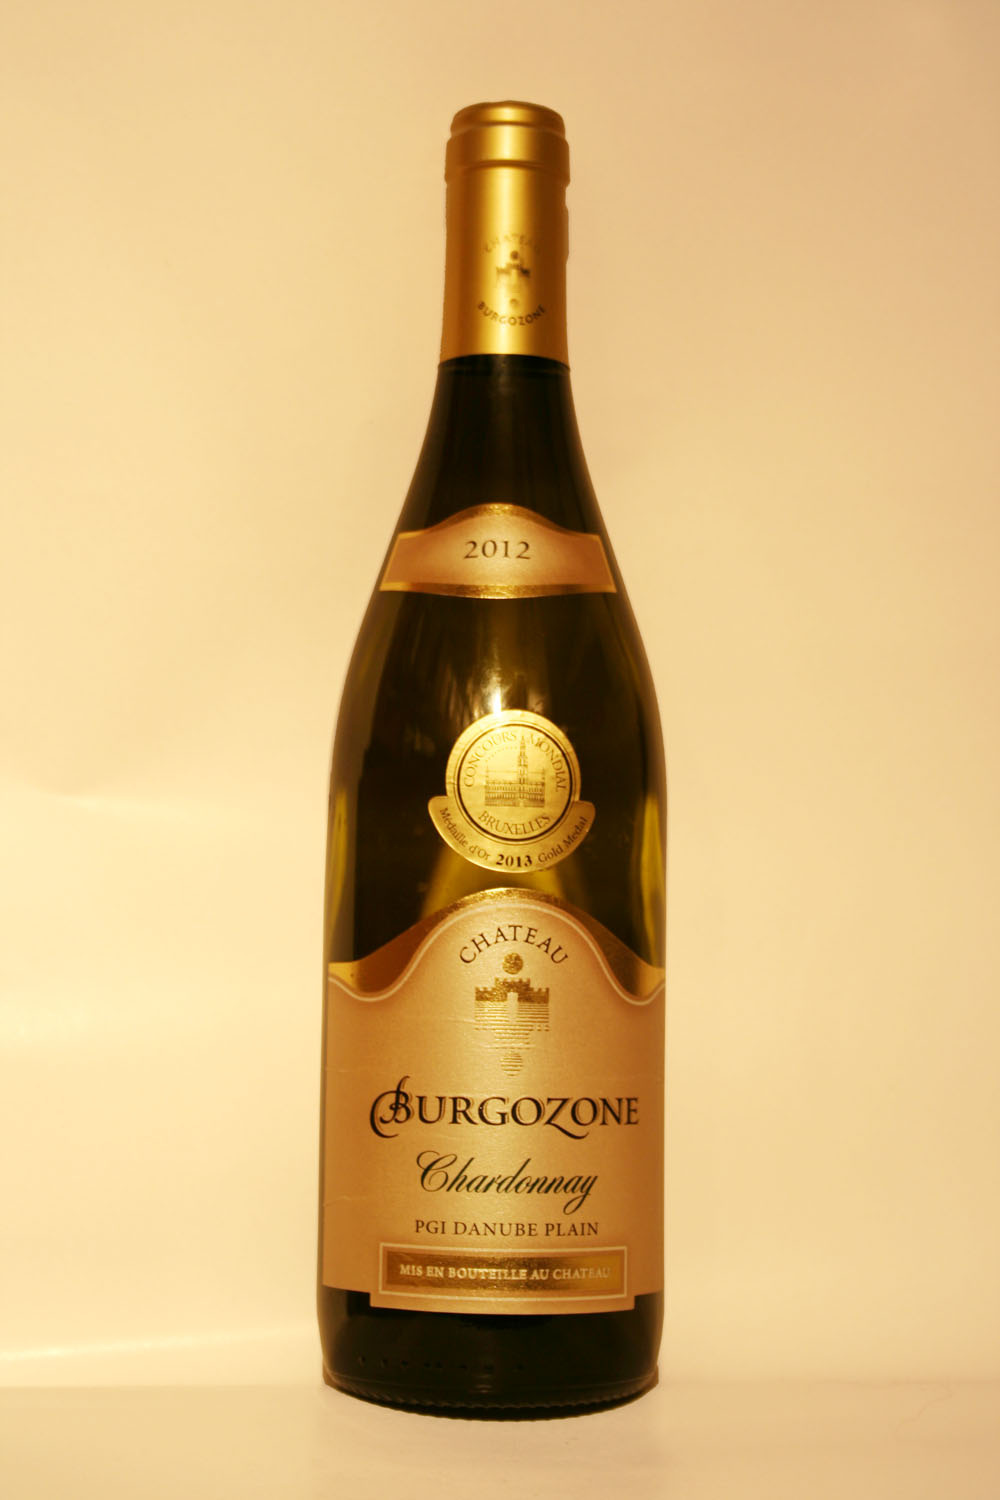 Chateau Burgozone Chardonnay 2012 - Кликнете на изображението, за да го затворите